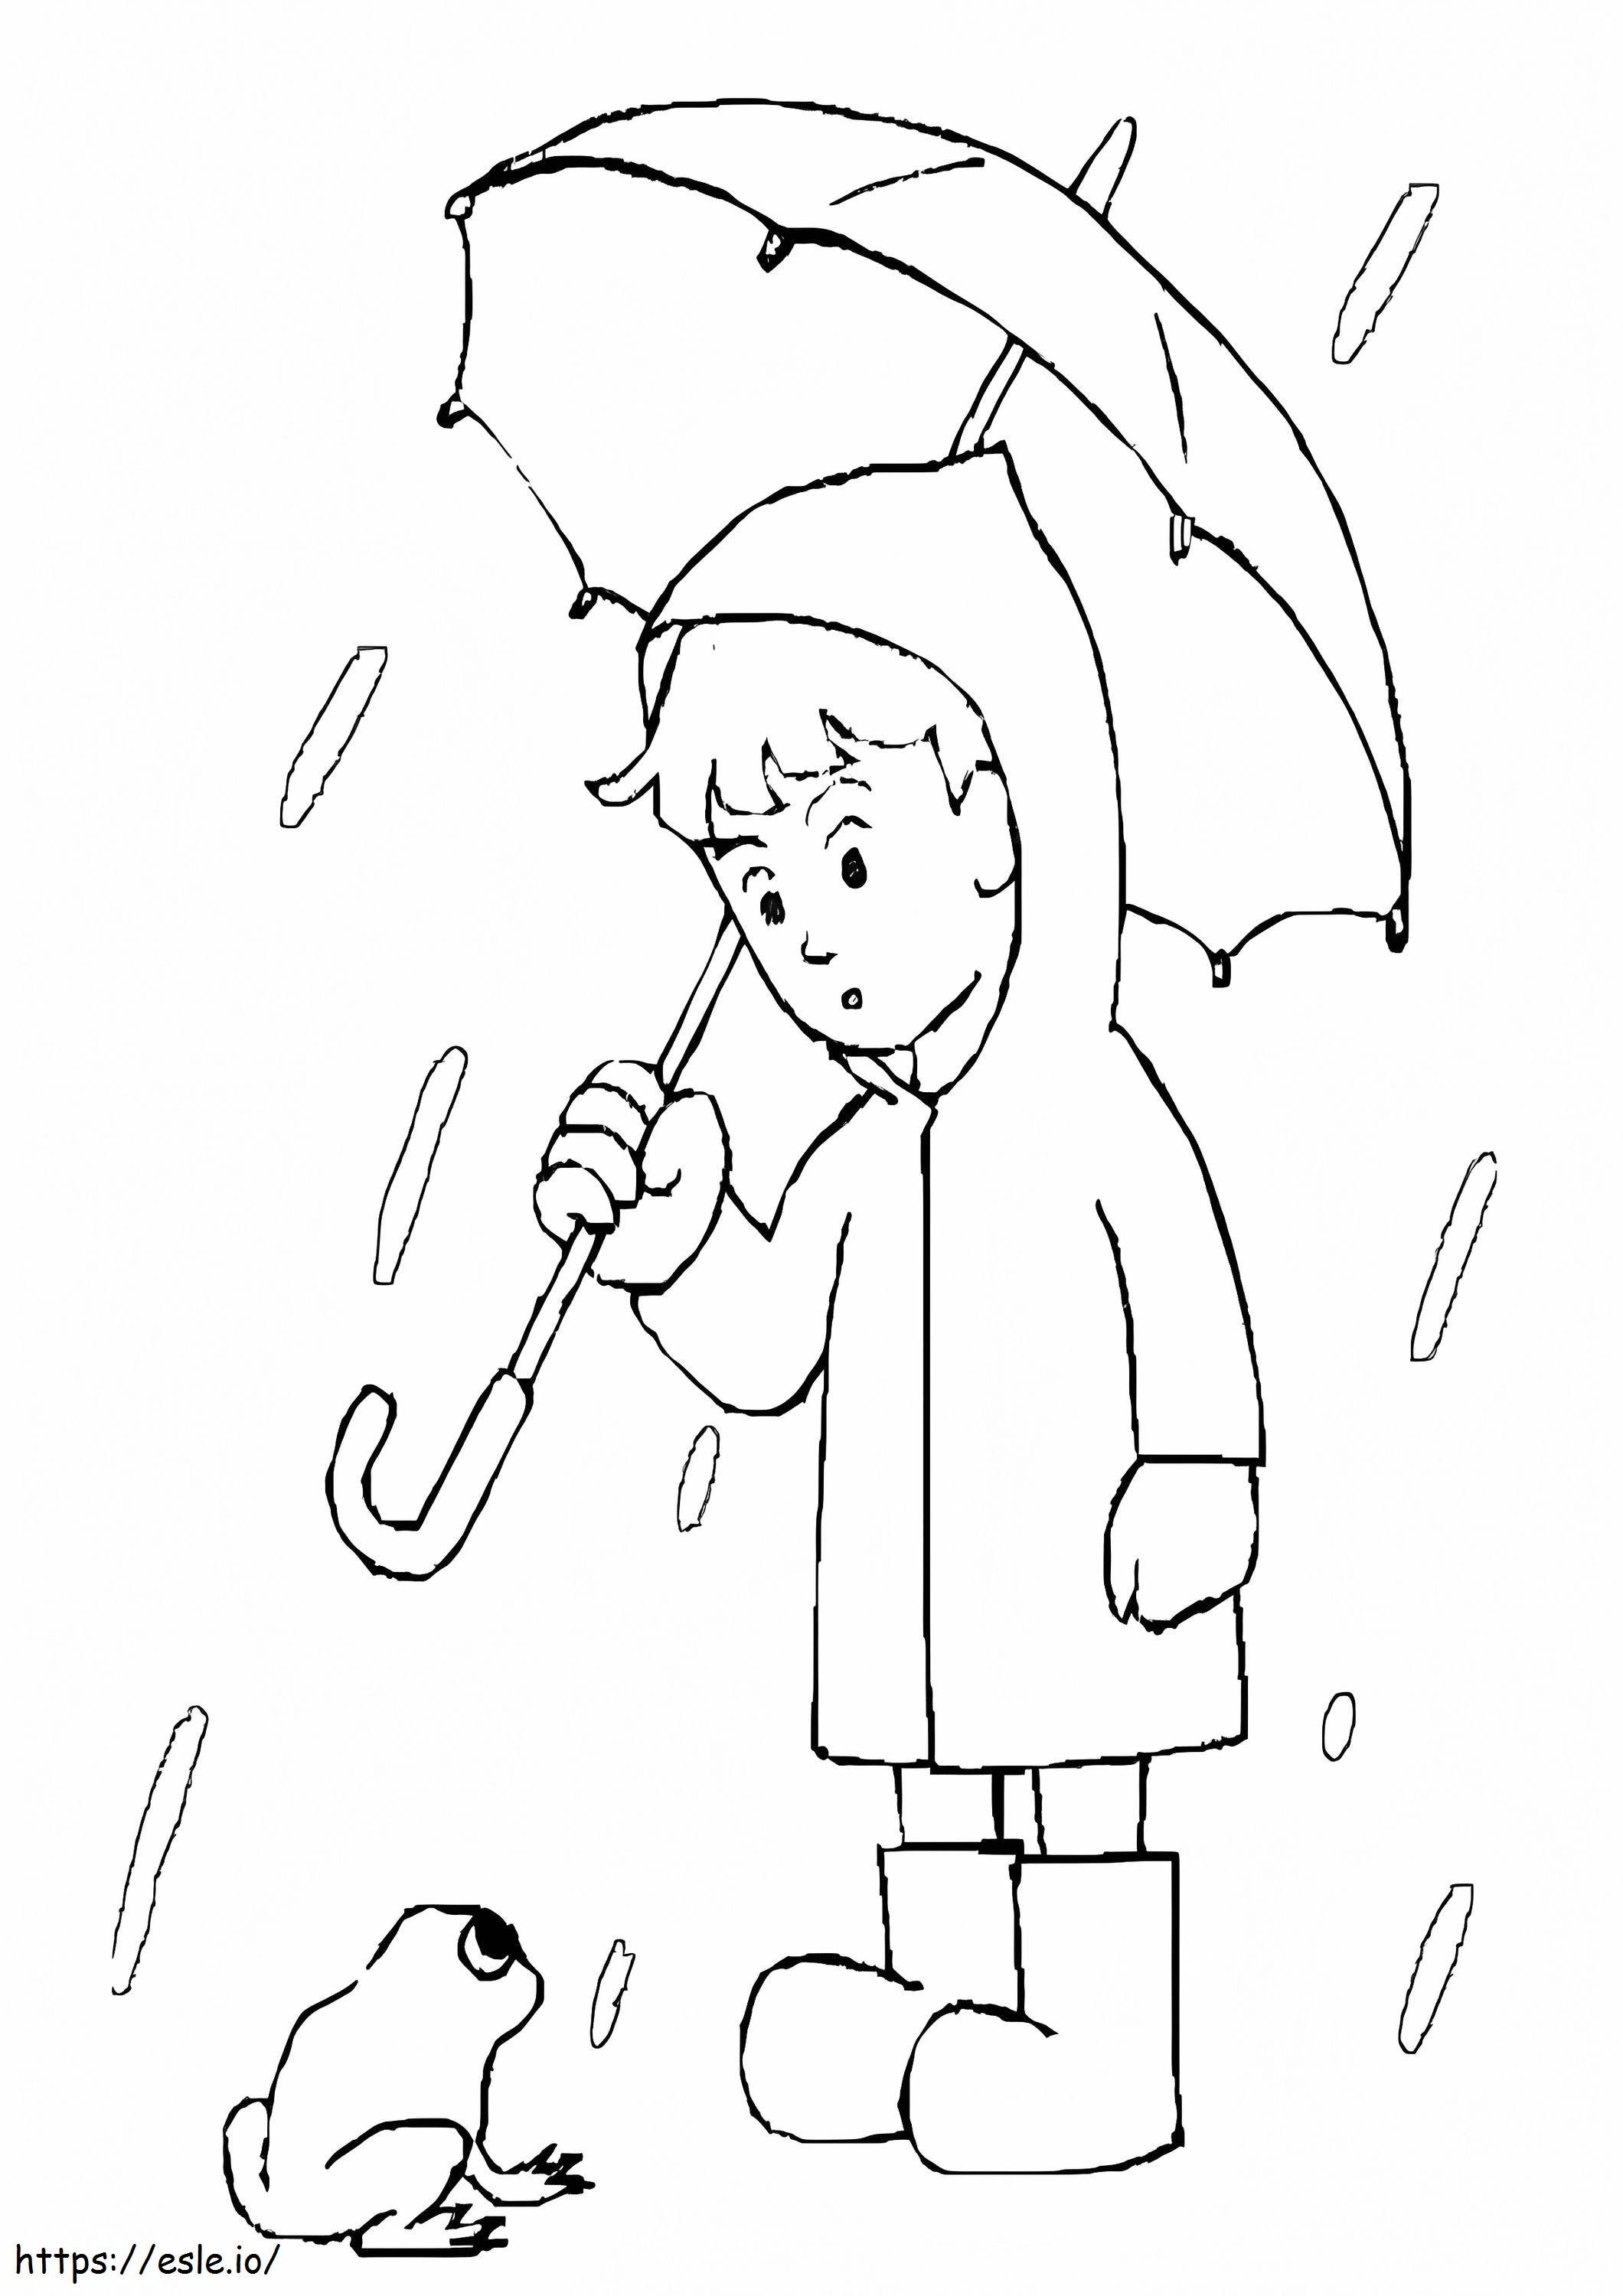 Junge mit Regenschirm ausmalbilder